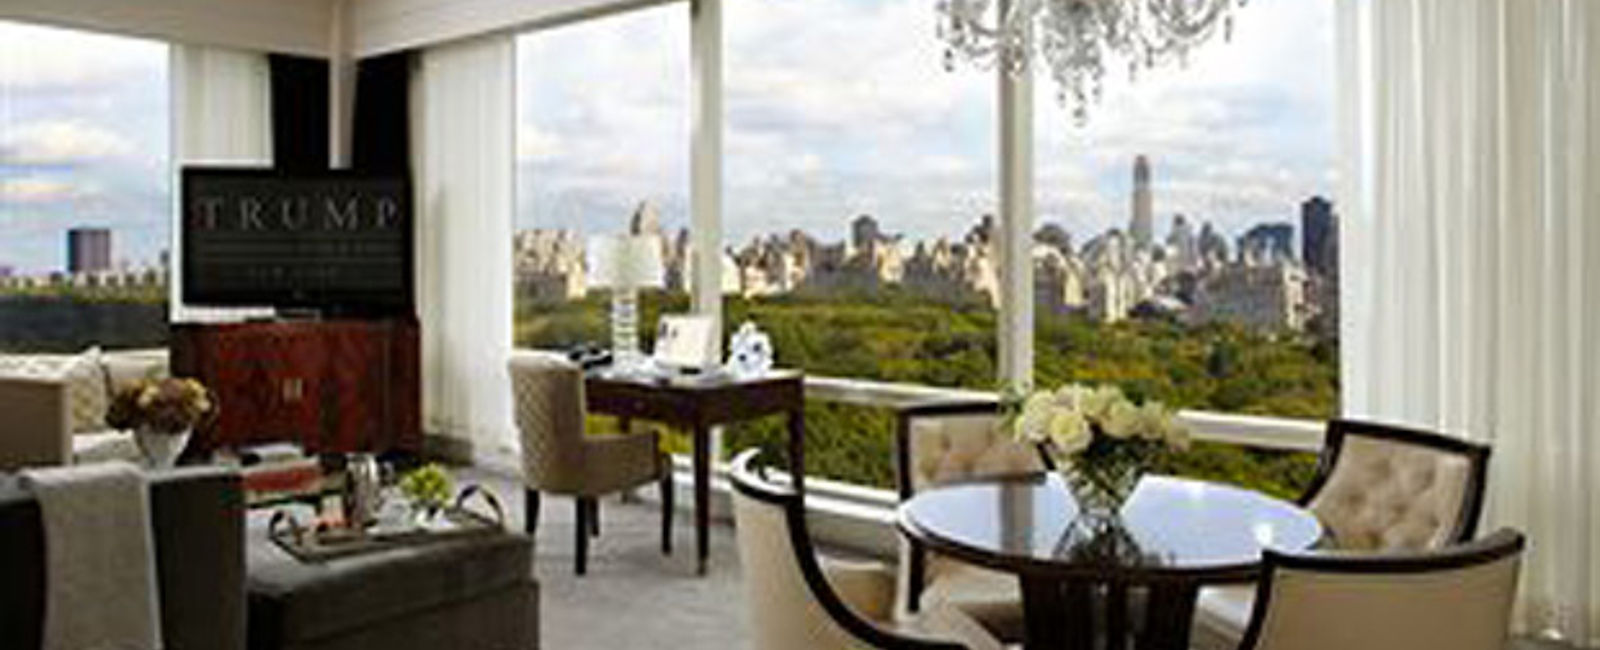 HOTEL TIPPS
 Trump International Hotel & Tower New York 
 Luxus Gourmeturlaub mit Entspannungsfaktor 